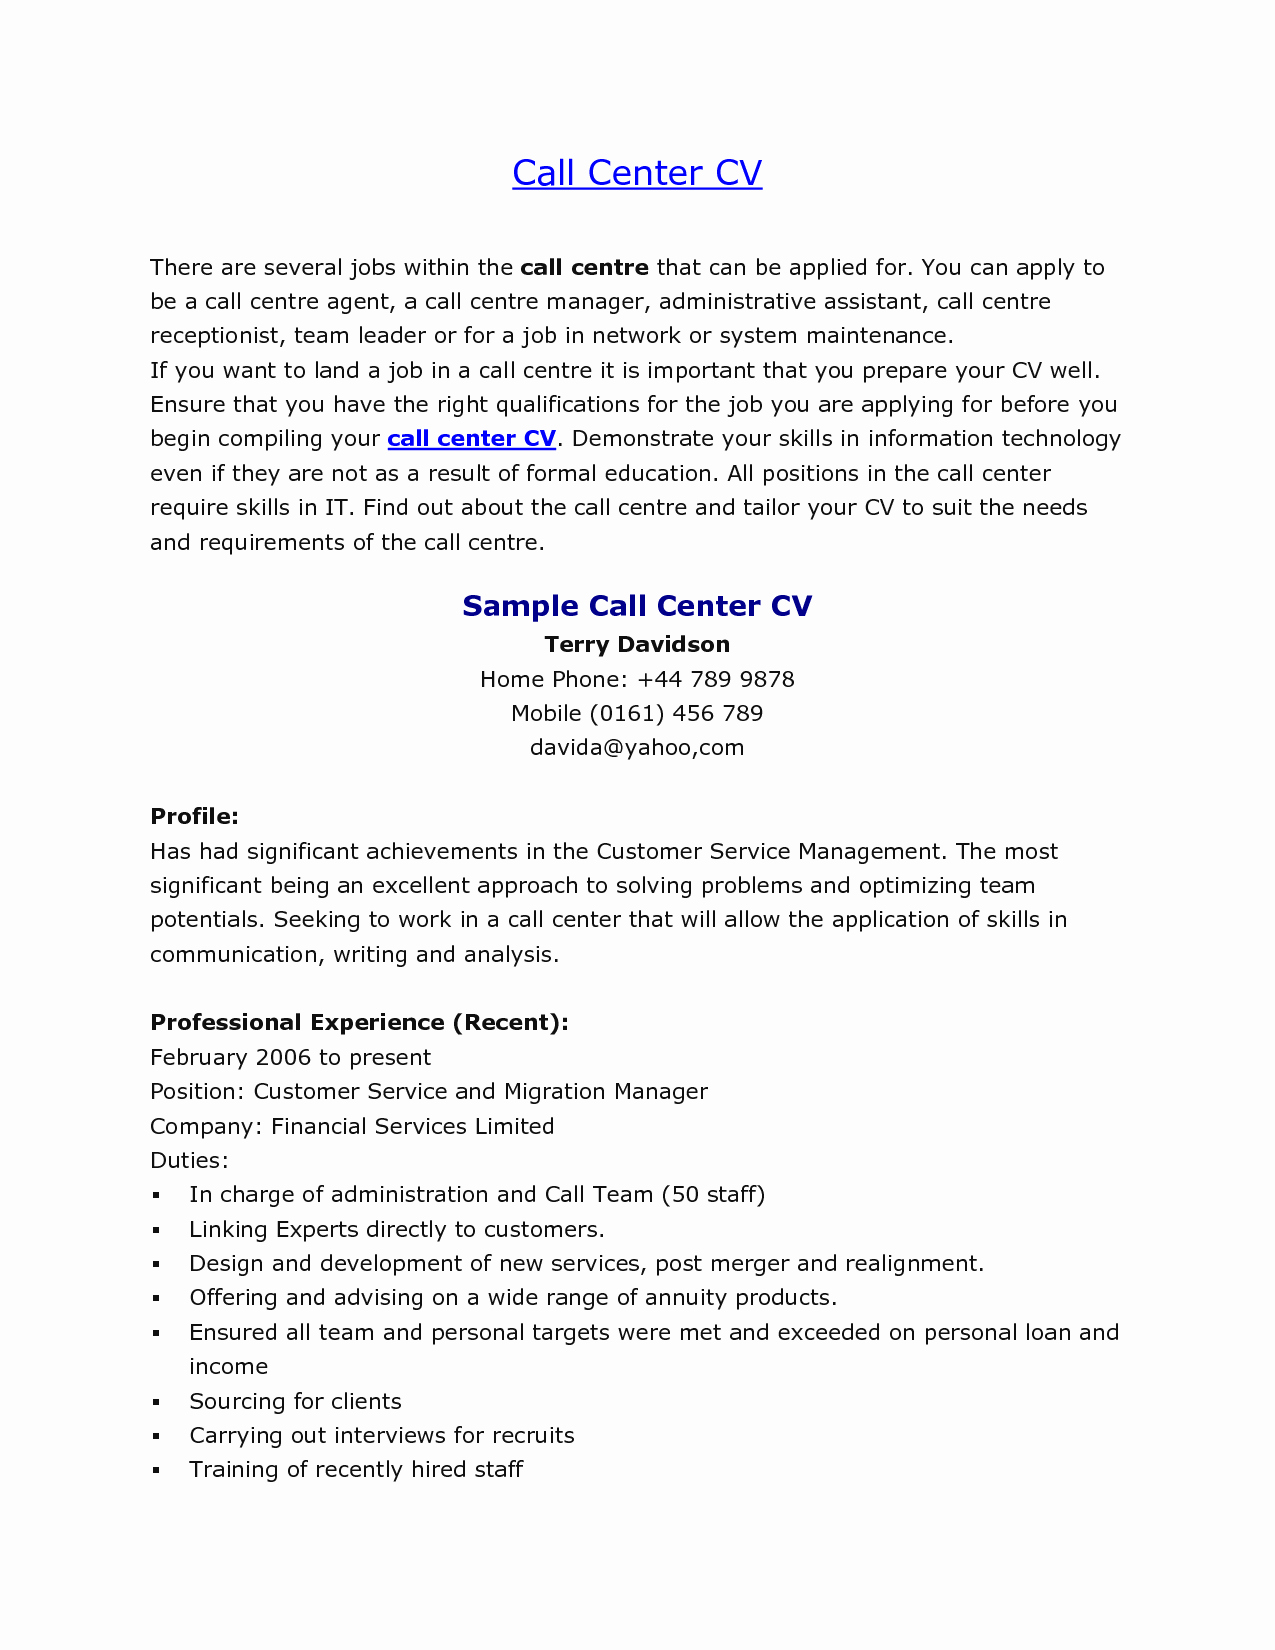 Sample Resume for Call Center Jobs Bongdaao